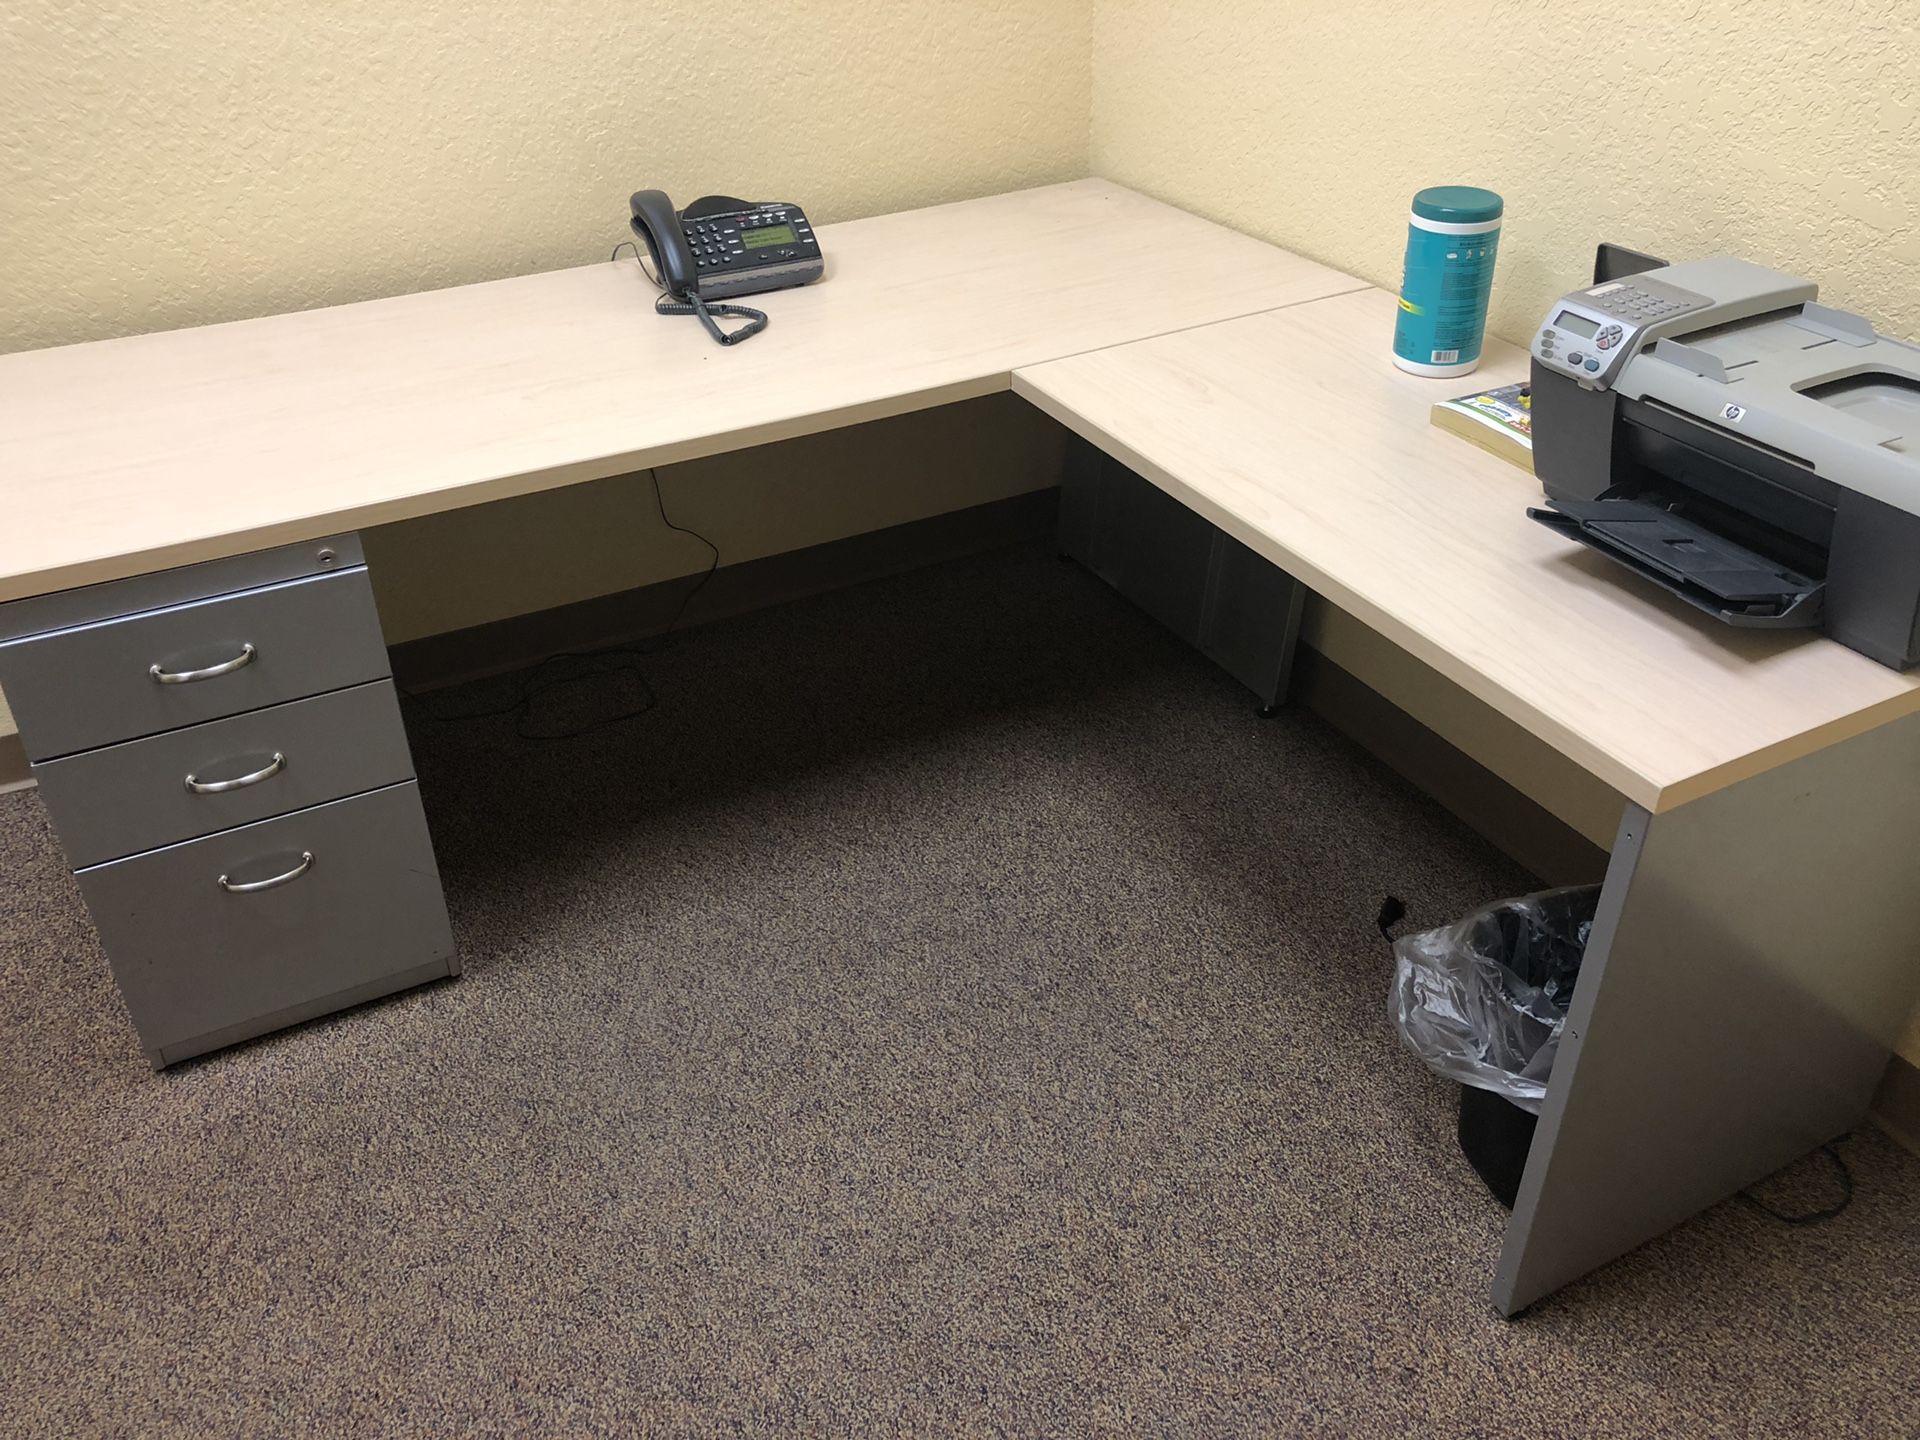 Two large desks